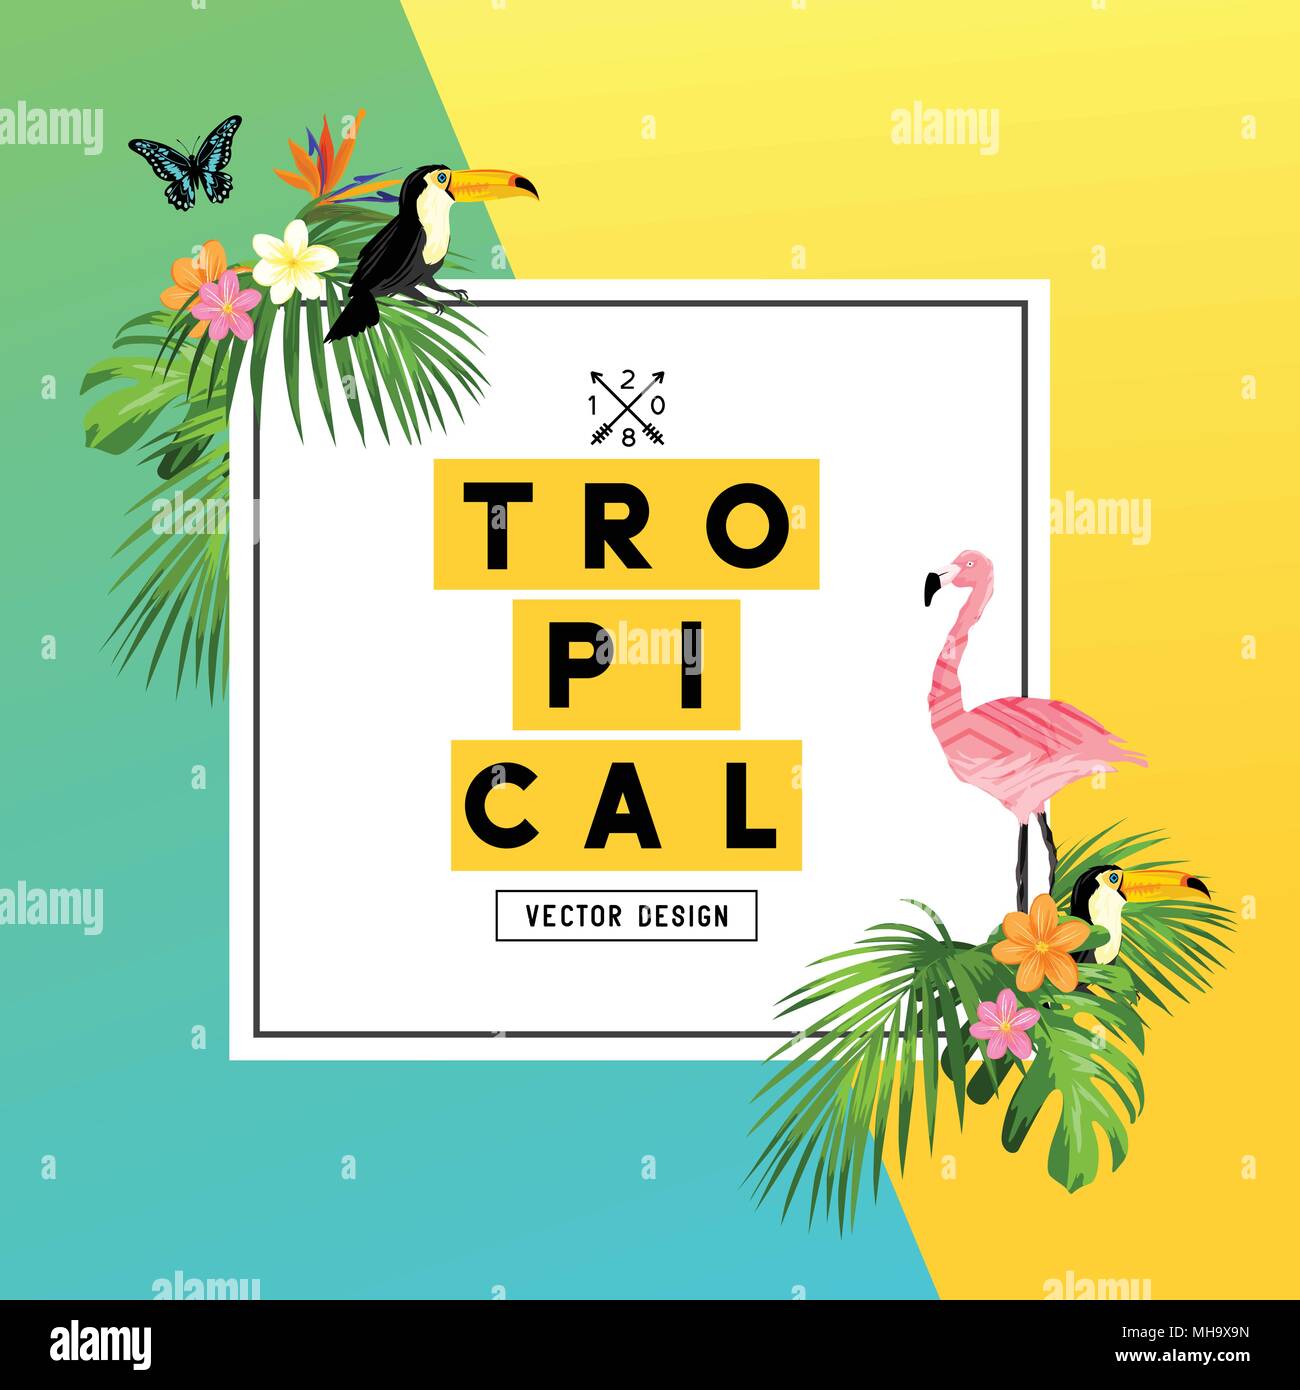 Einen hellen und bunten tropischen Sommer Design mit Plumerias, tropische Vögel und Dschungel Palmblättern. Vector Illustration. Stock Vektor